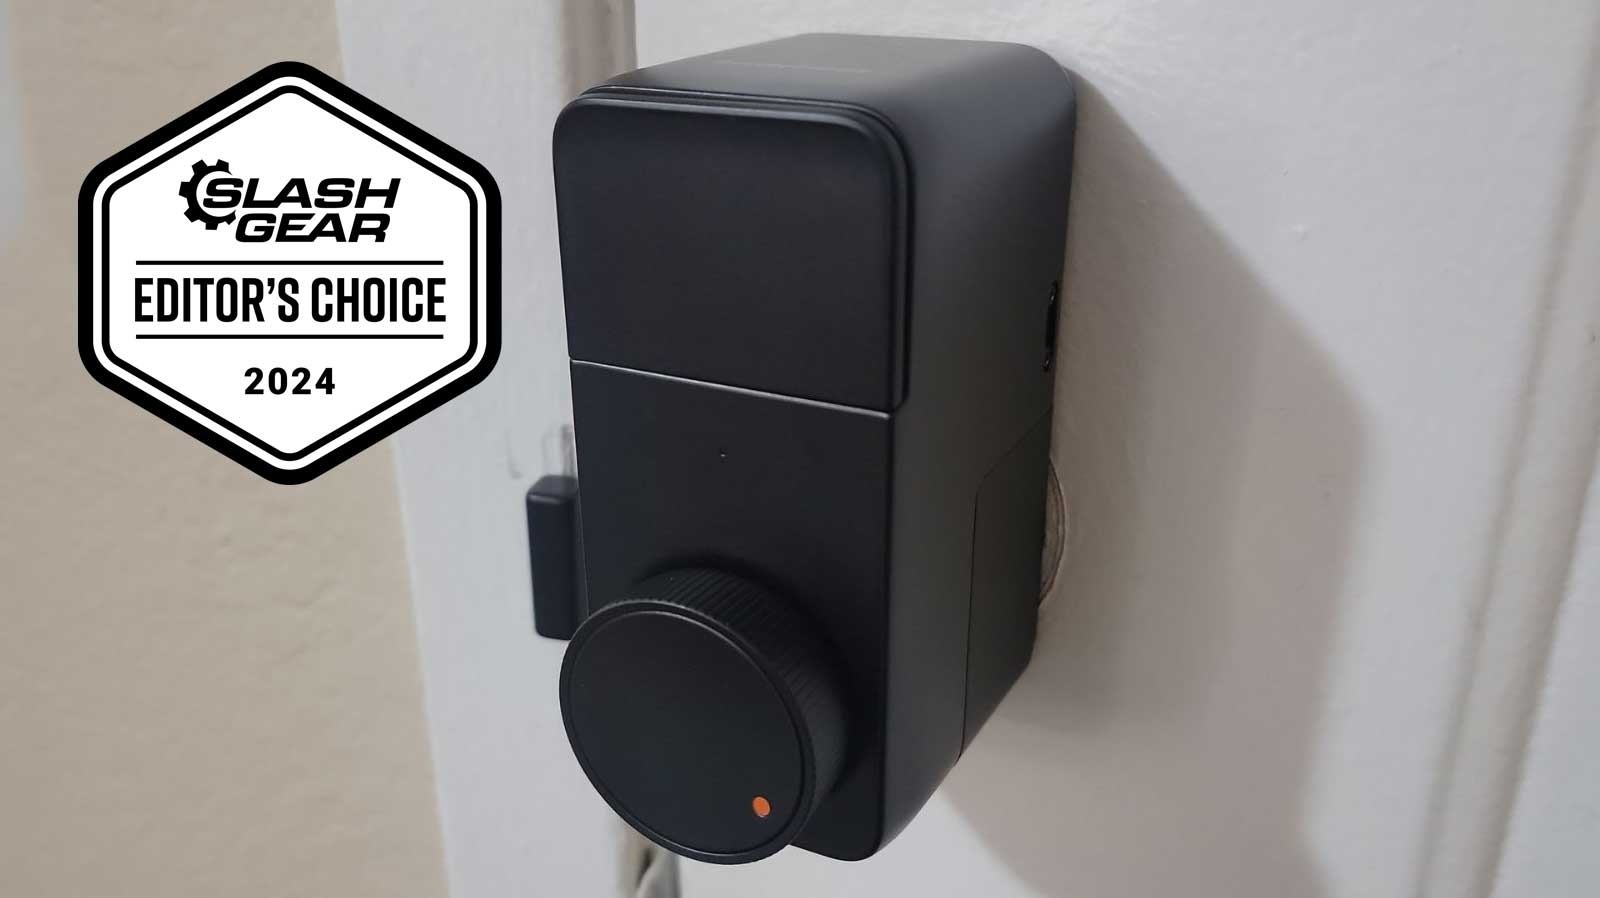 Una cerradura inteligente asequible, sencilla y apta para inquilinos